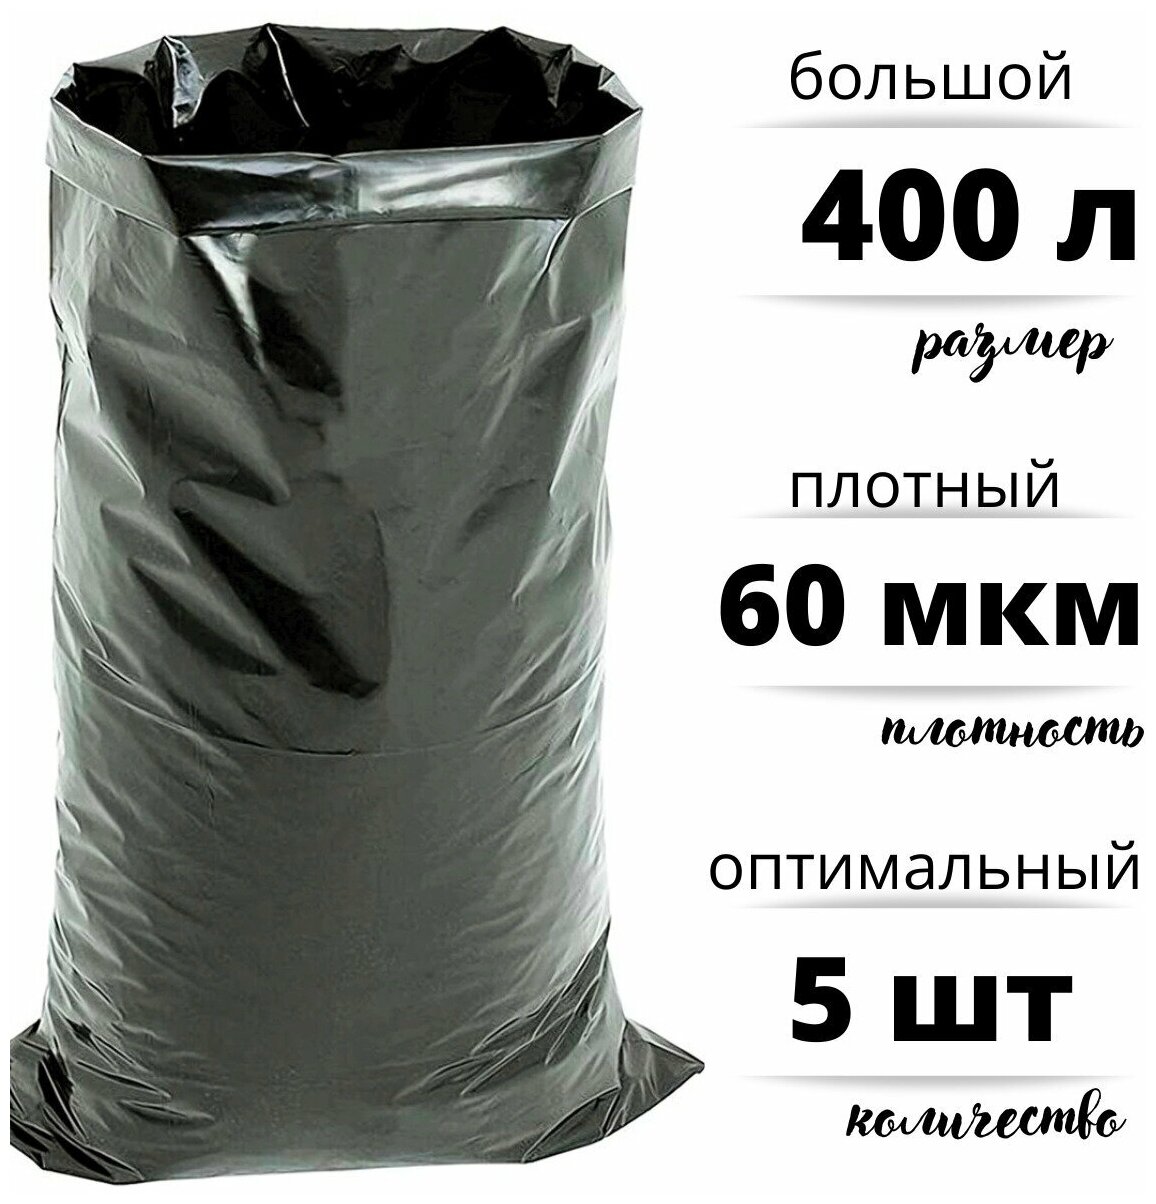 Мешки для строительного и бытового мусора полиэтиленовые 400 л особо плотные ПВД 60 мкм 5 штук